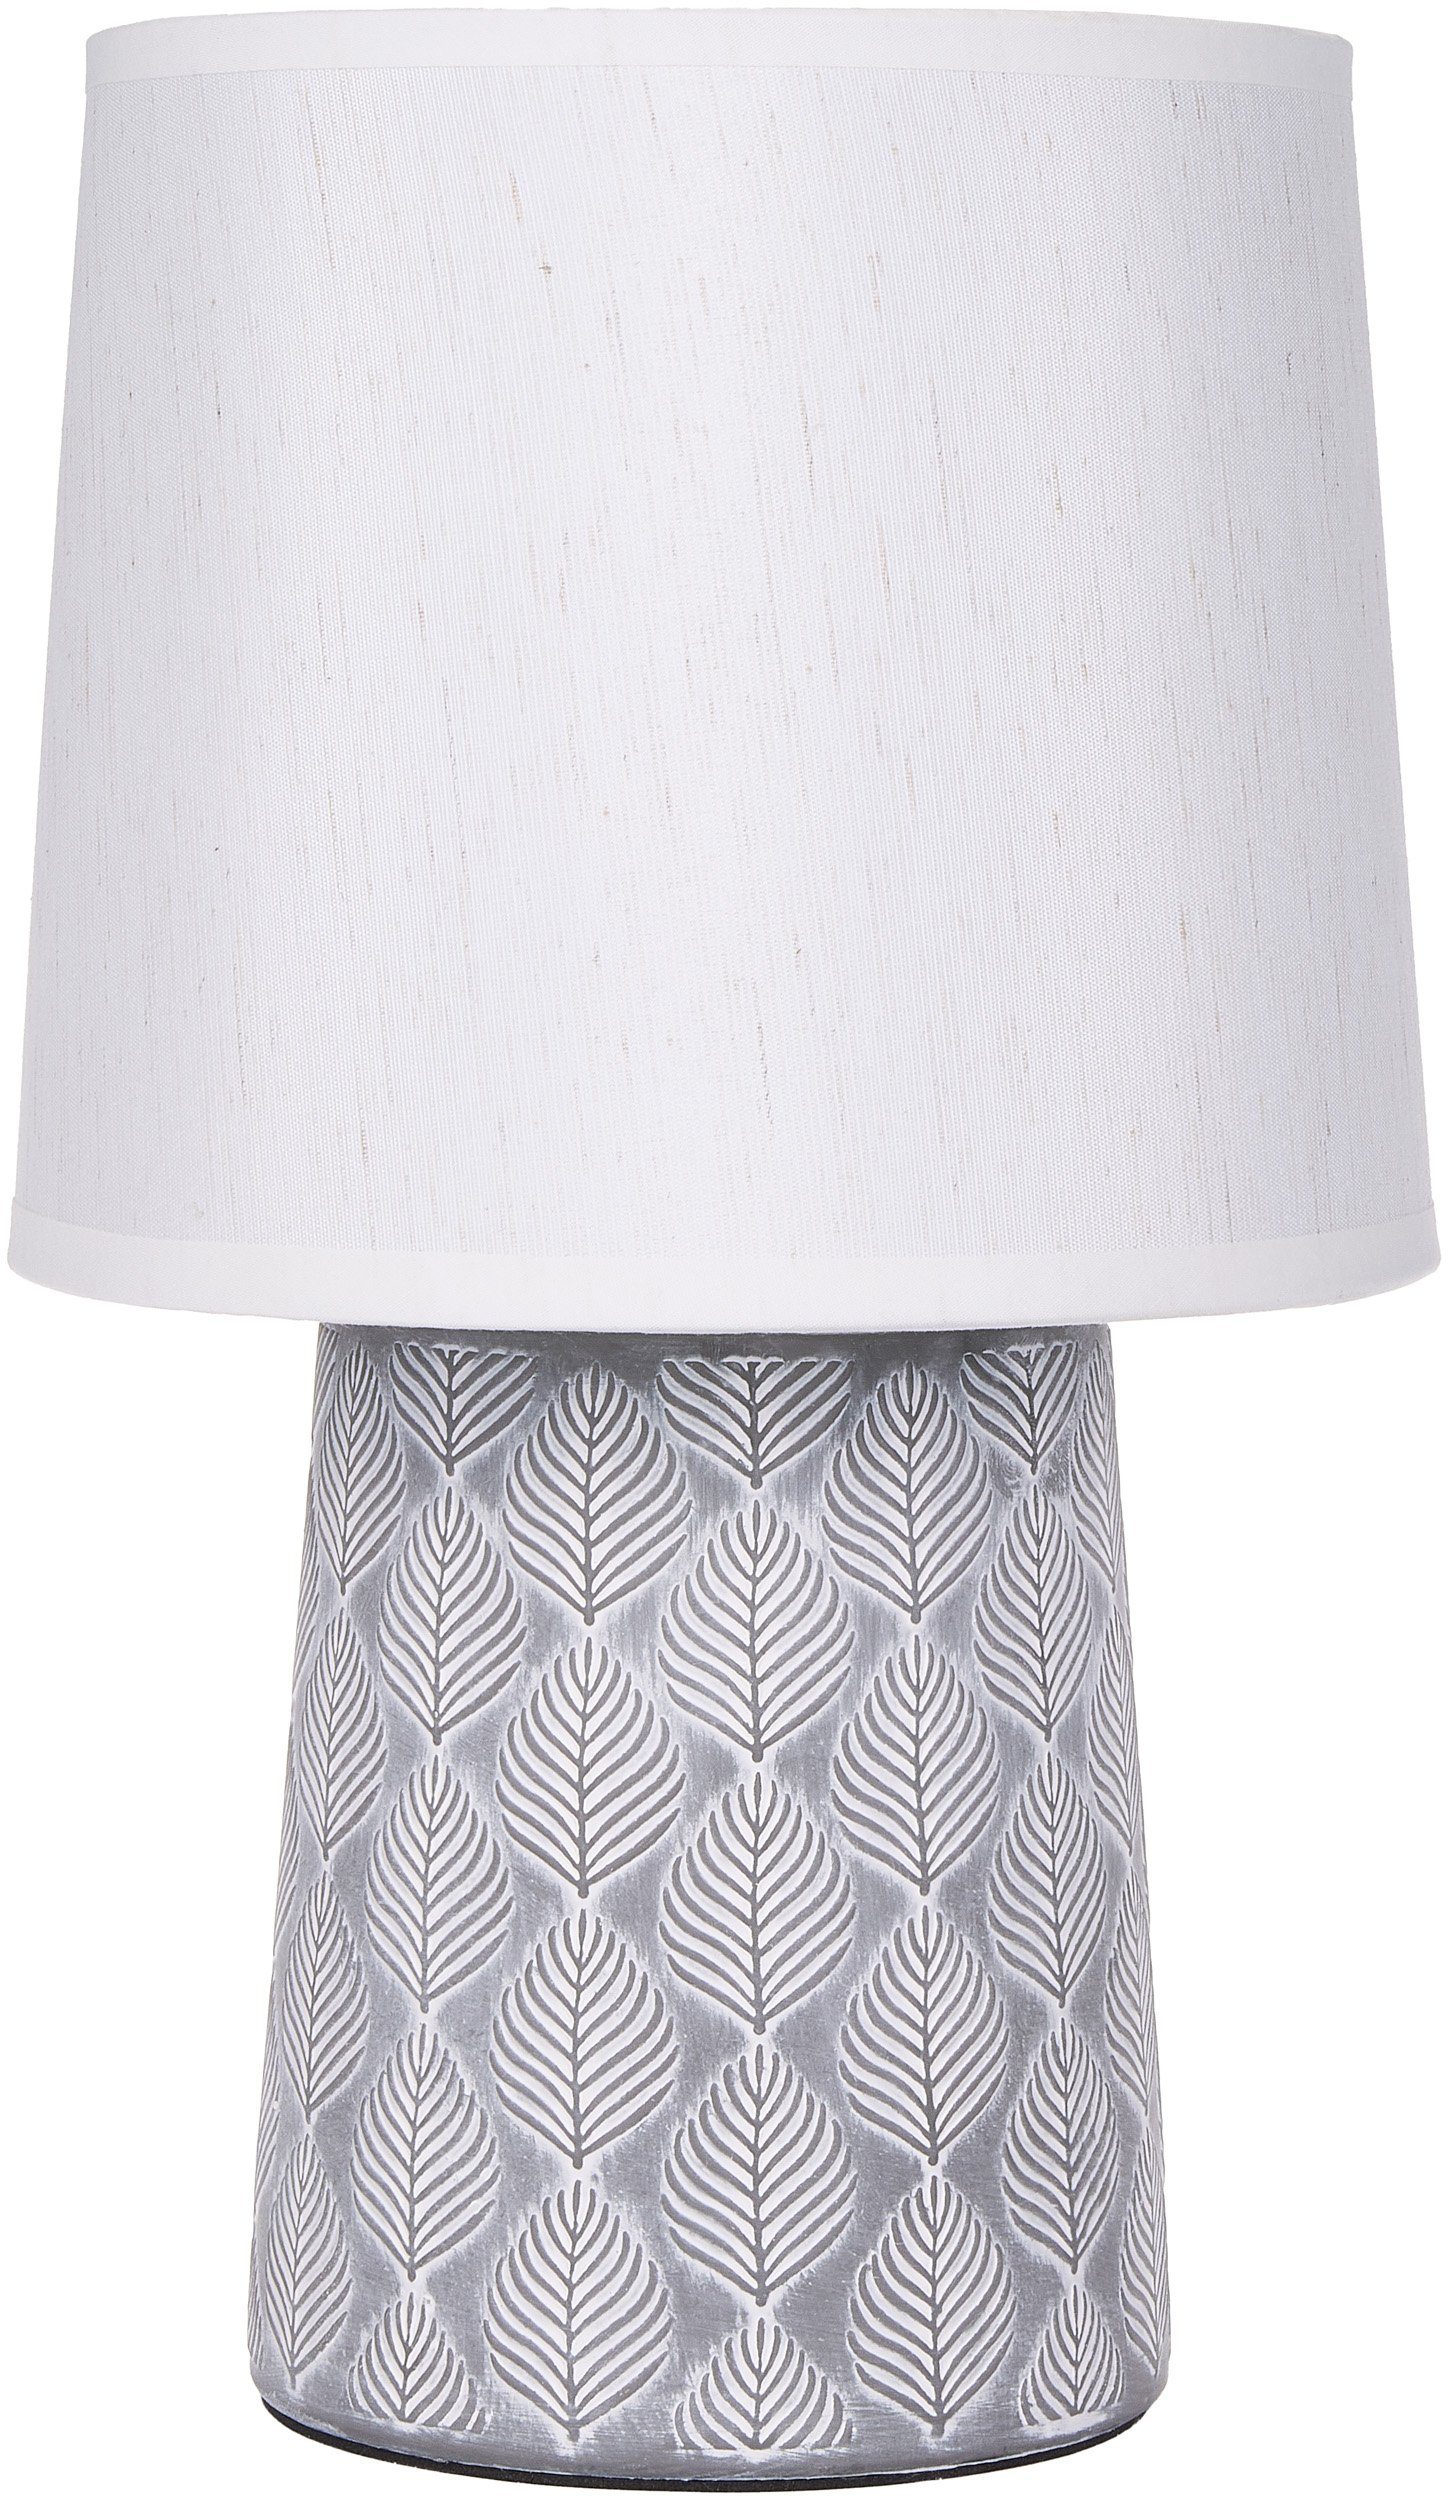 BRUBAKER Tischleuchte Nachttischlampe mit Blatt Ornamenten, Tischlampe, Ohne Leuchtmittel, Keramikfuß, modern